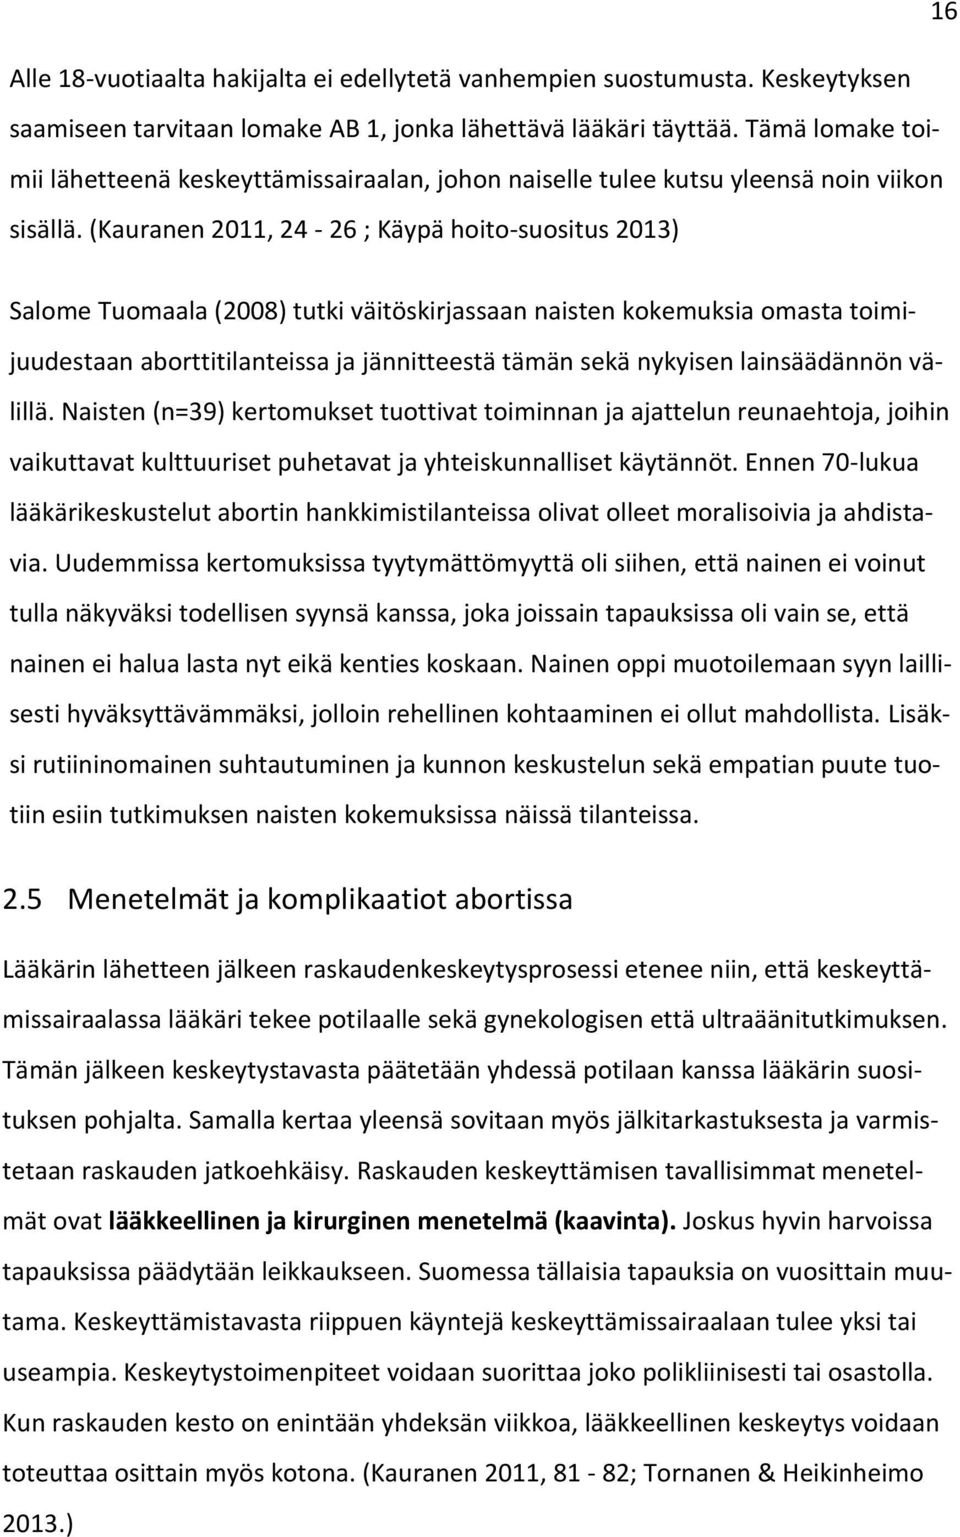 (Kauranen 2011, 24-26 ; Käypä hoito-suositus 2013) Salome Tuomaala (2008) tutki väitöskirjassaan naisten kokemuksia omasta toimijuudestaan aborttitilanteissa ja jännitteestä tämän sekä nykyisen